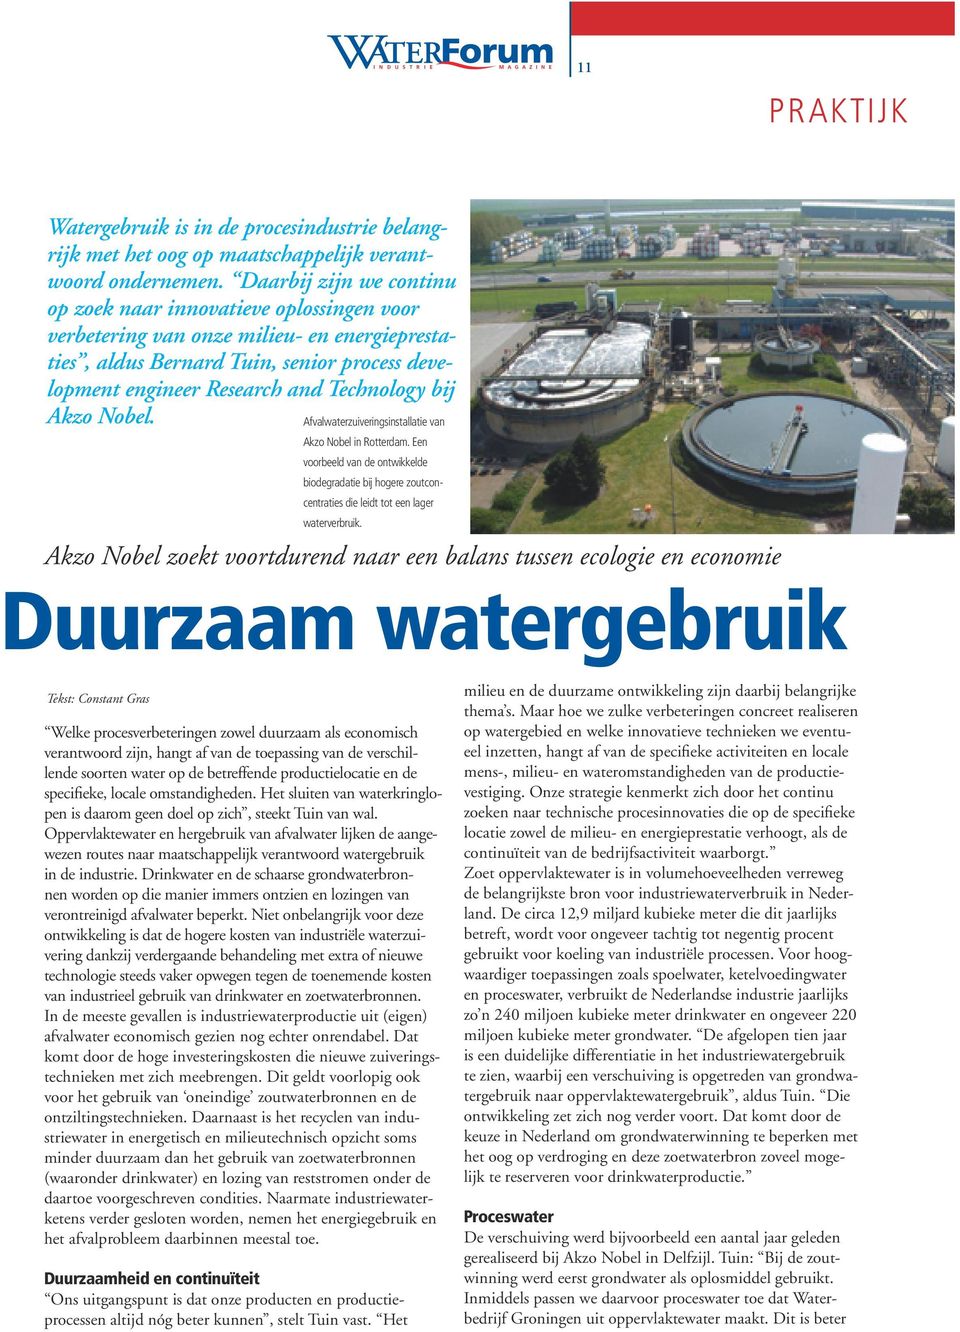 bij Akzo Nobel. Afvalwaterzuiveringsinstallatie van Akzo Nobel in Rotterdam. Een voorbeeld van de ontwikkelde biodegradatie bij hogere zoutconcentraties die leidt tot een lager waterverbruik.